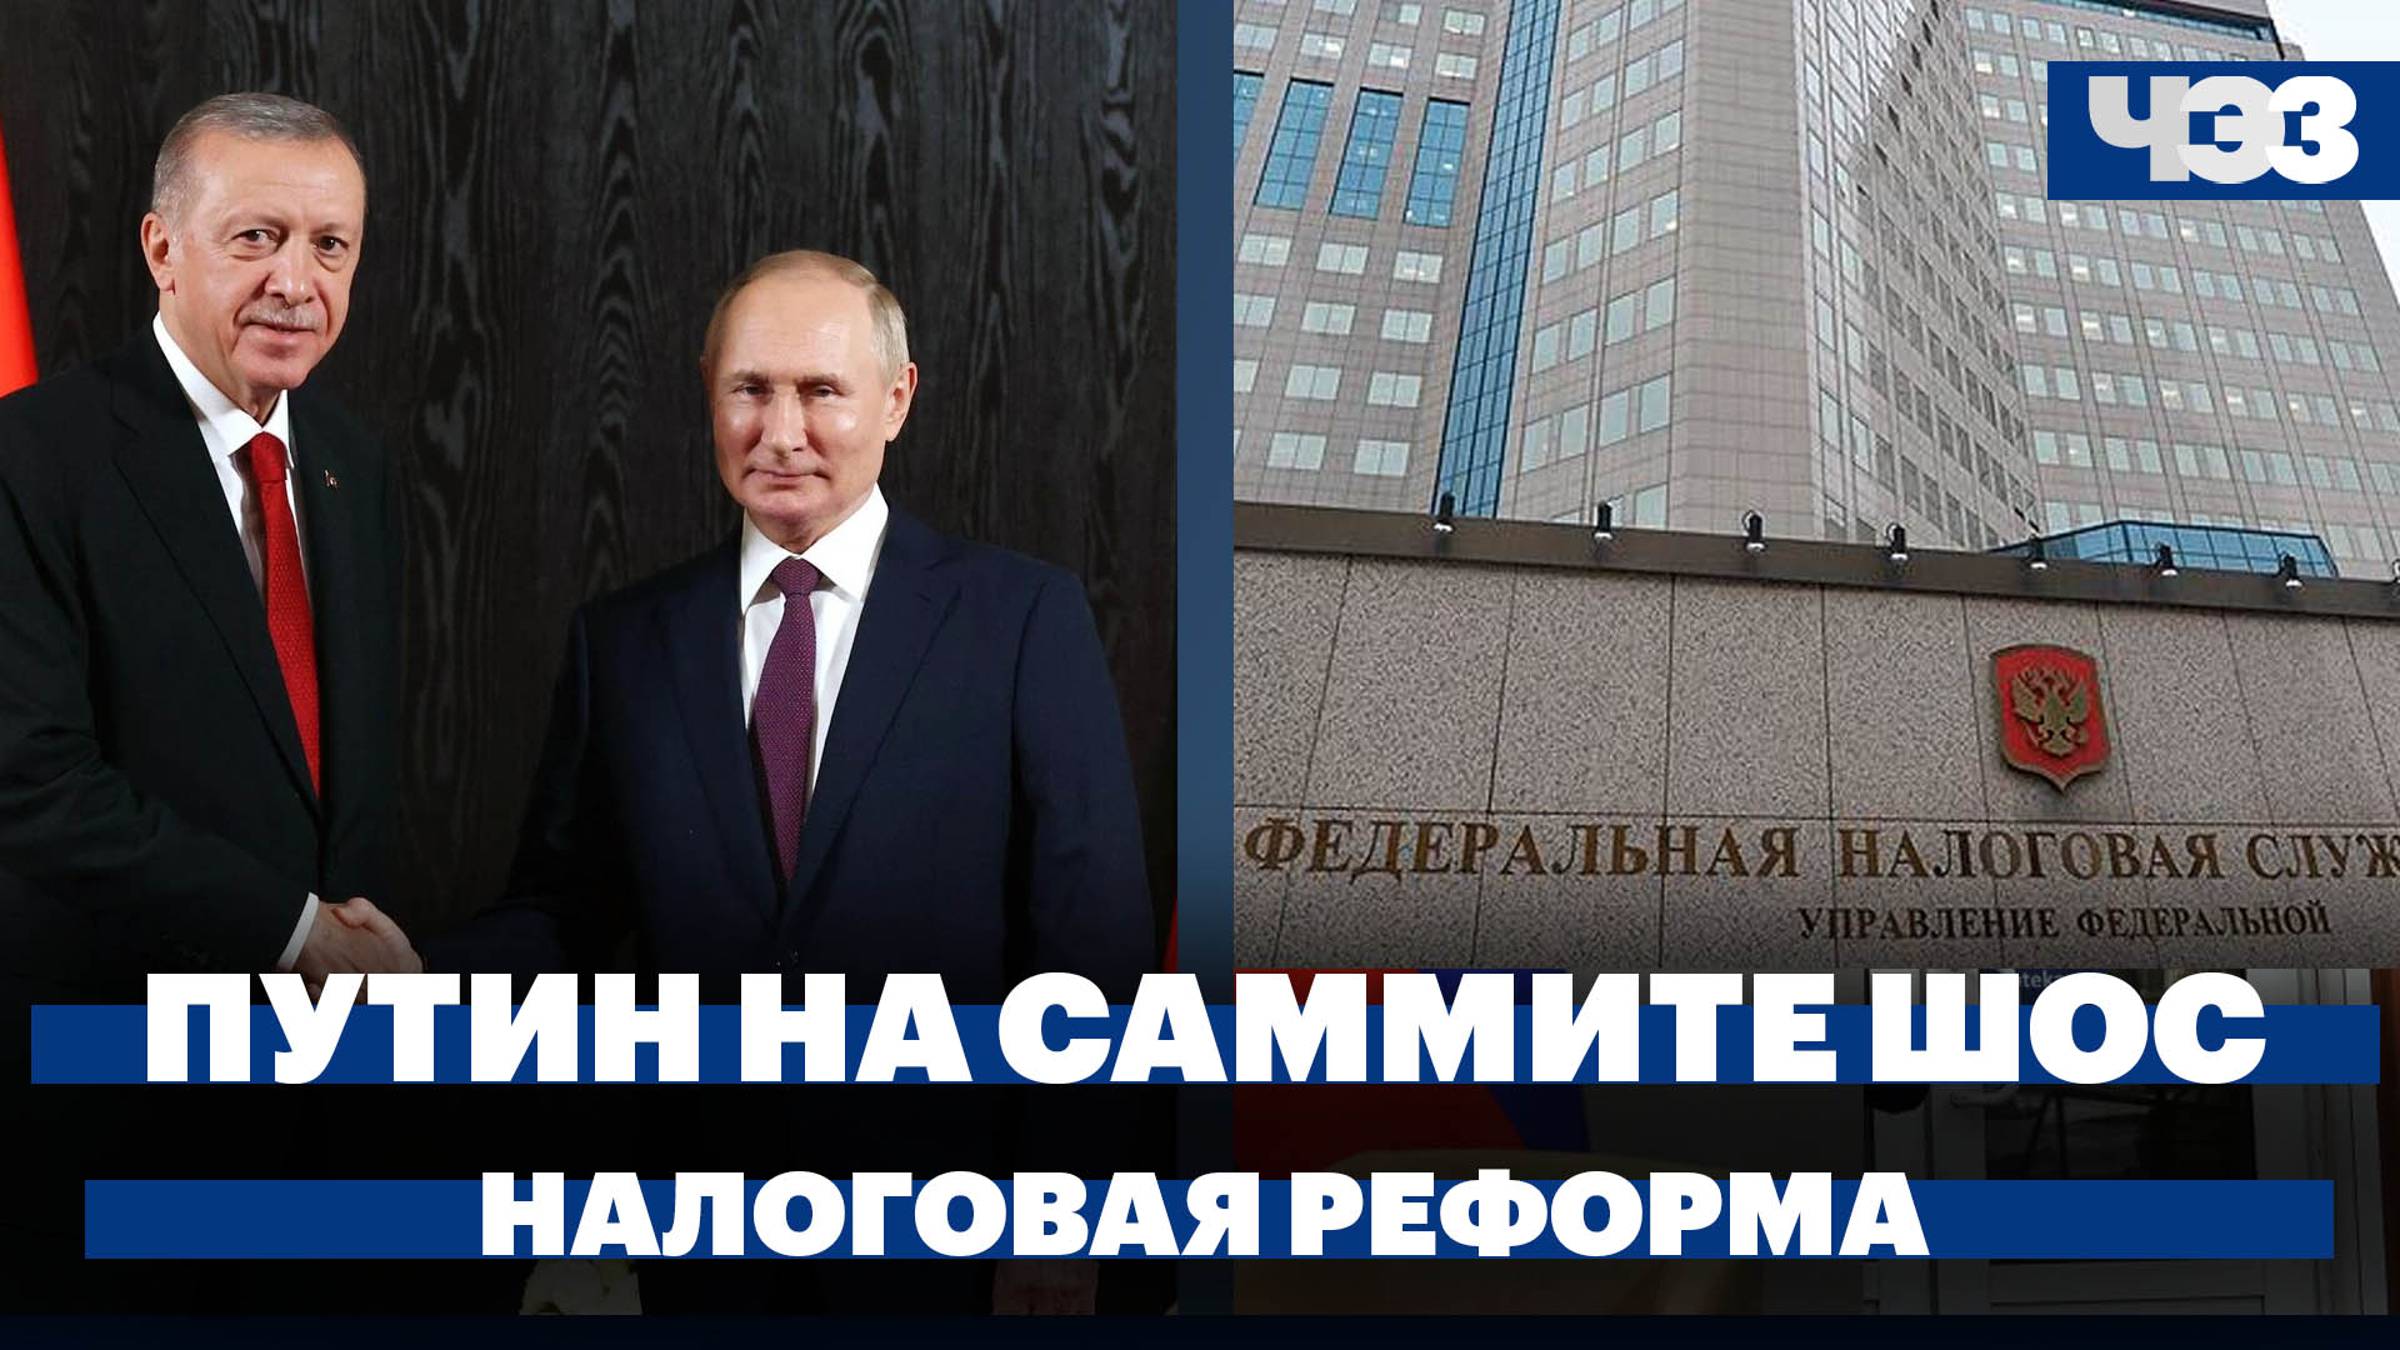 Итоги серии встреч Путина на саммите ШОС, кабмин доработал налоговую реформу